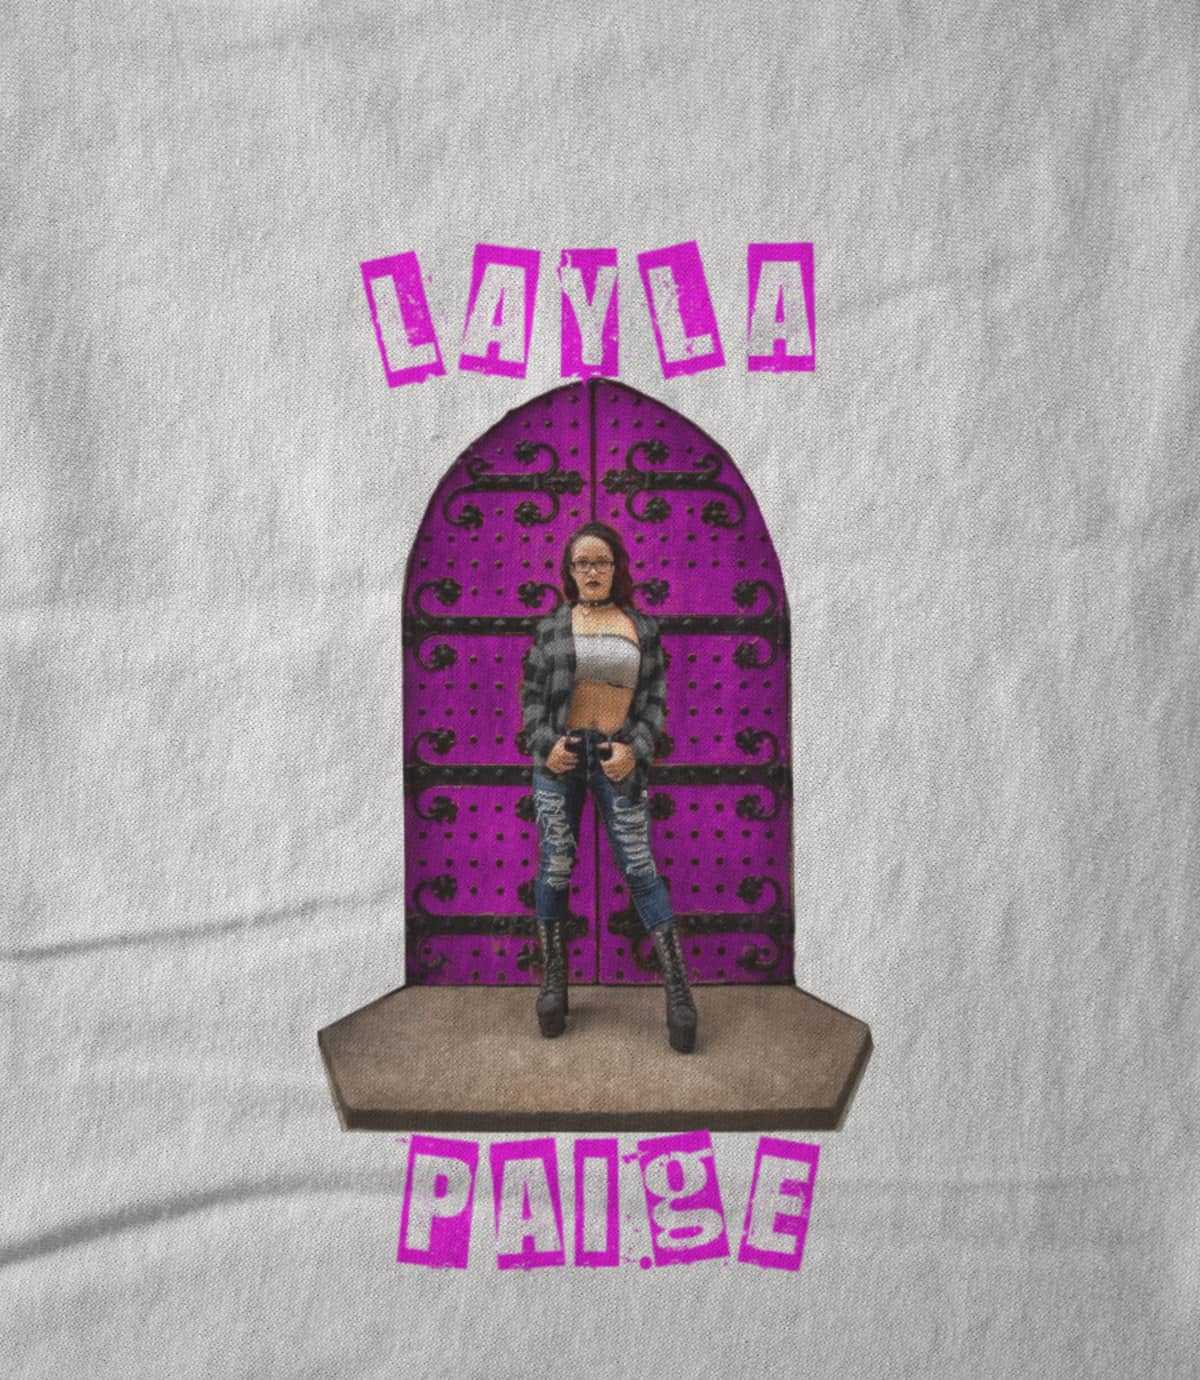 Layla Paige